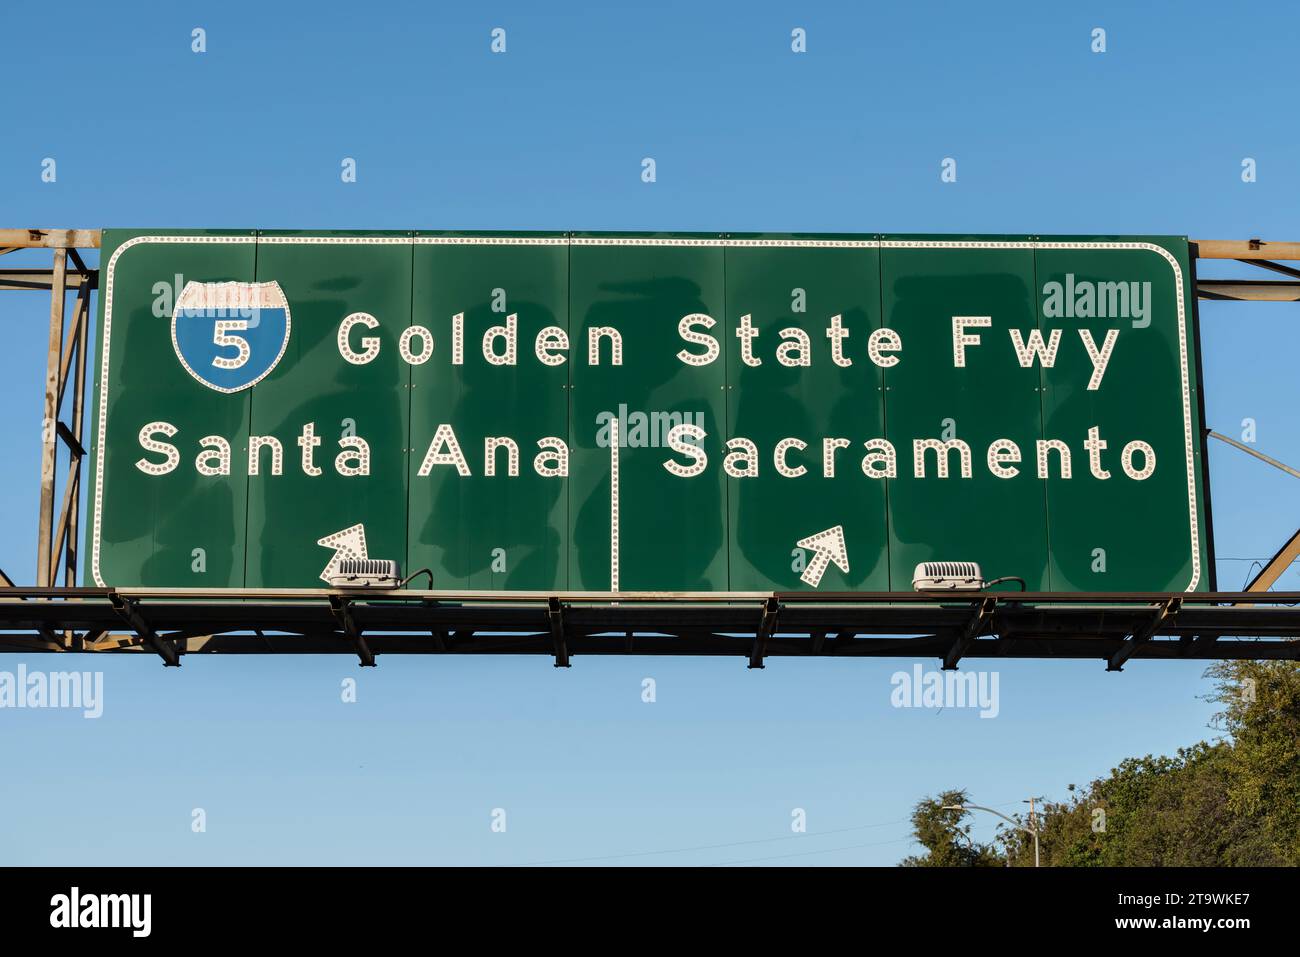 Vista dell'Interstate 5, segnale della Golden State Freeway per Santa Ana o Sacramento a Los Angeles, California. Foto Stock